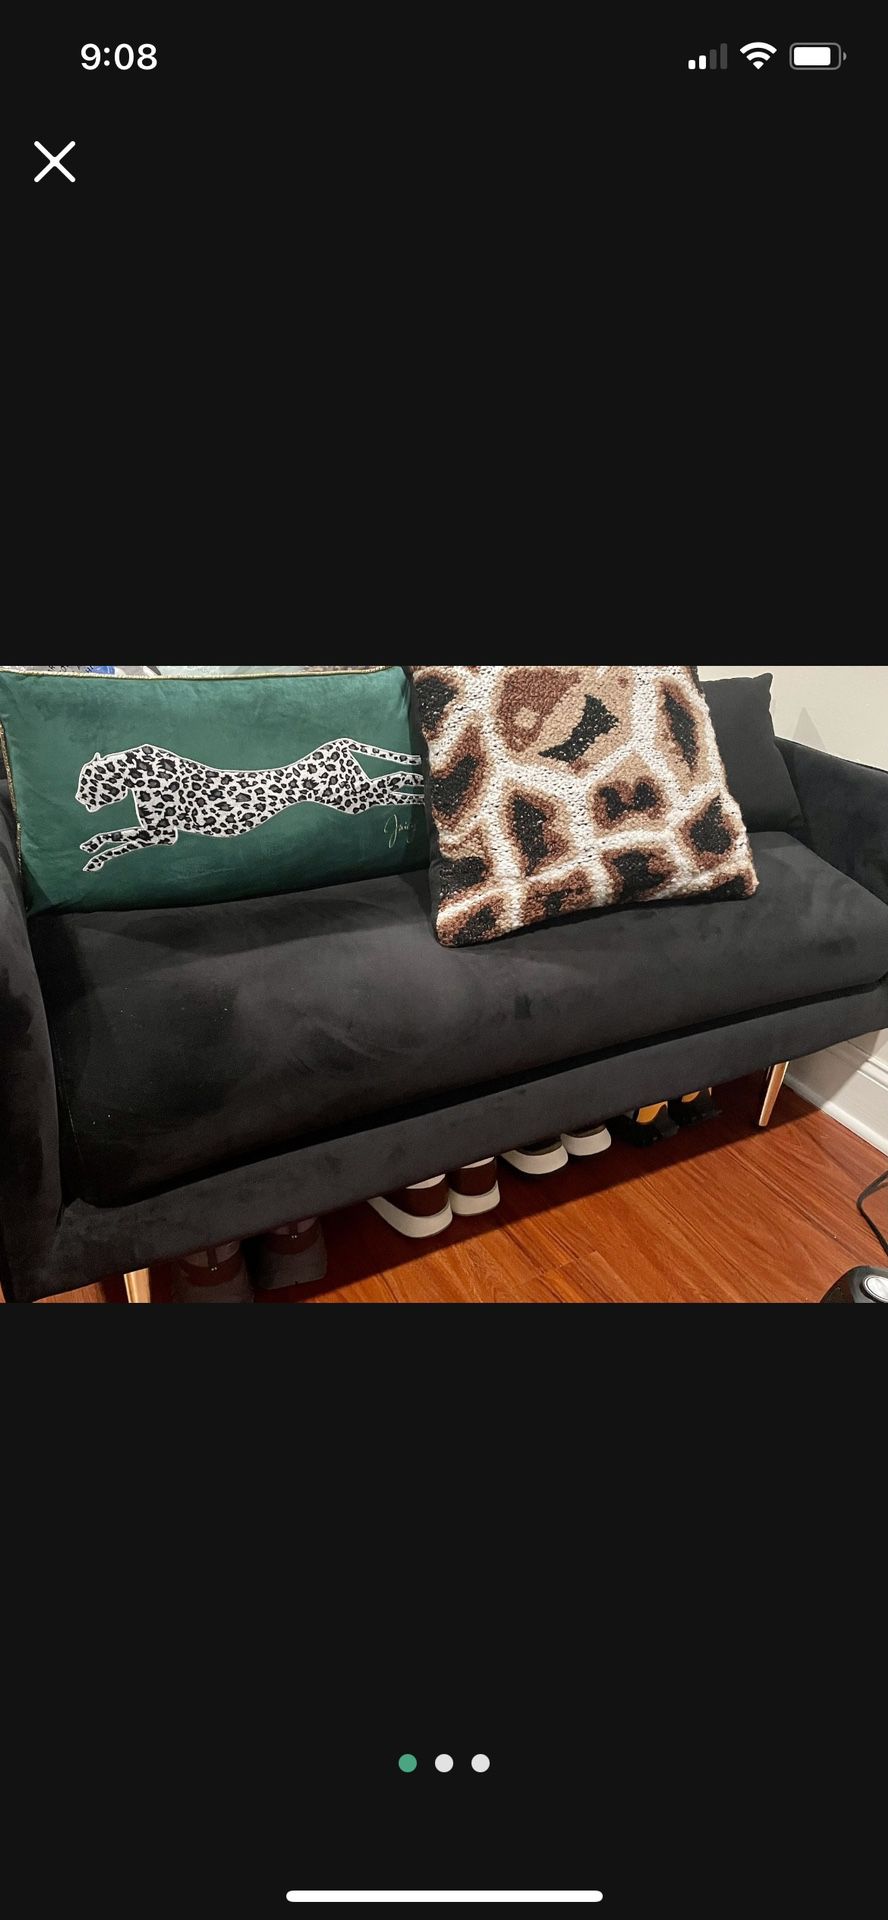 Black Velvet Upholstered Bench